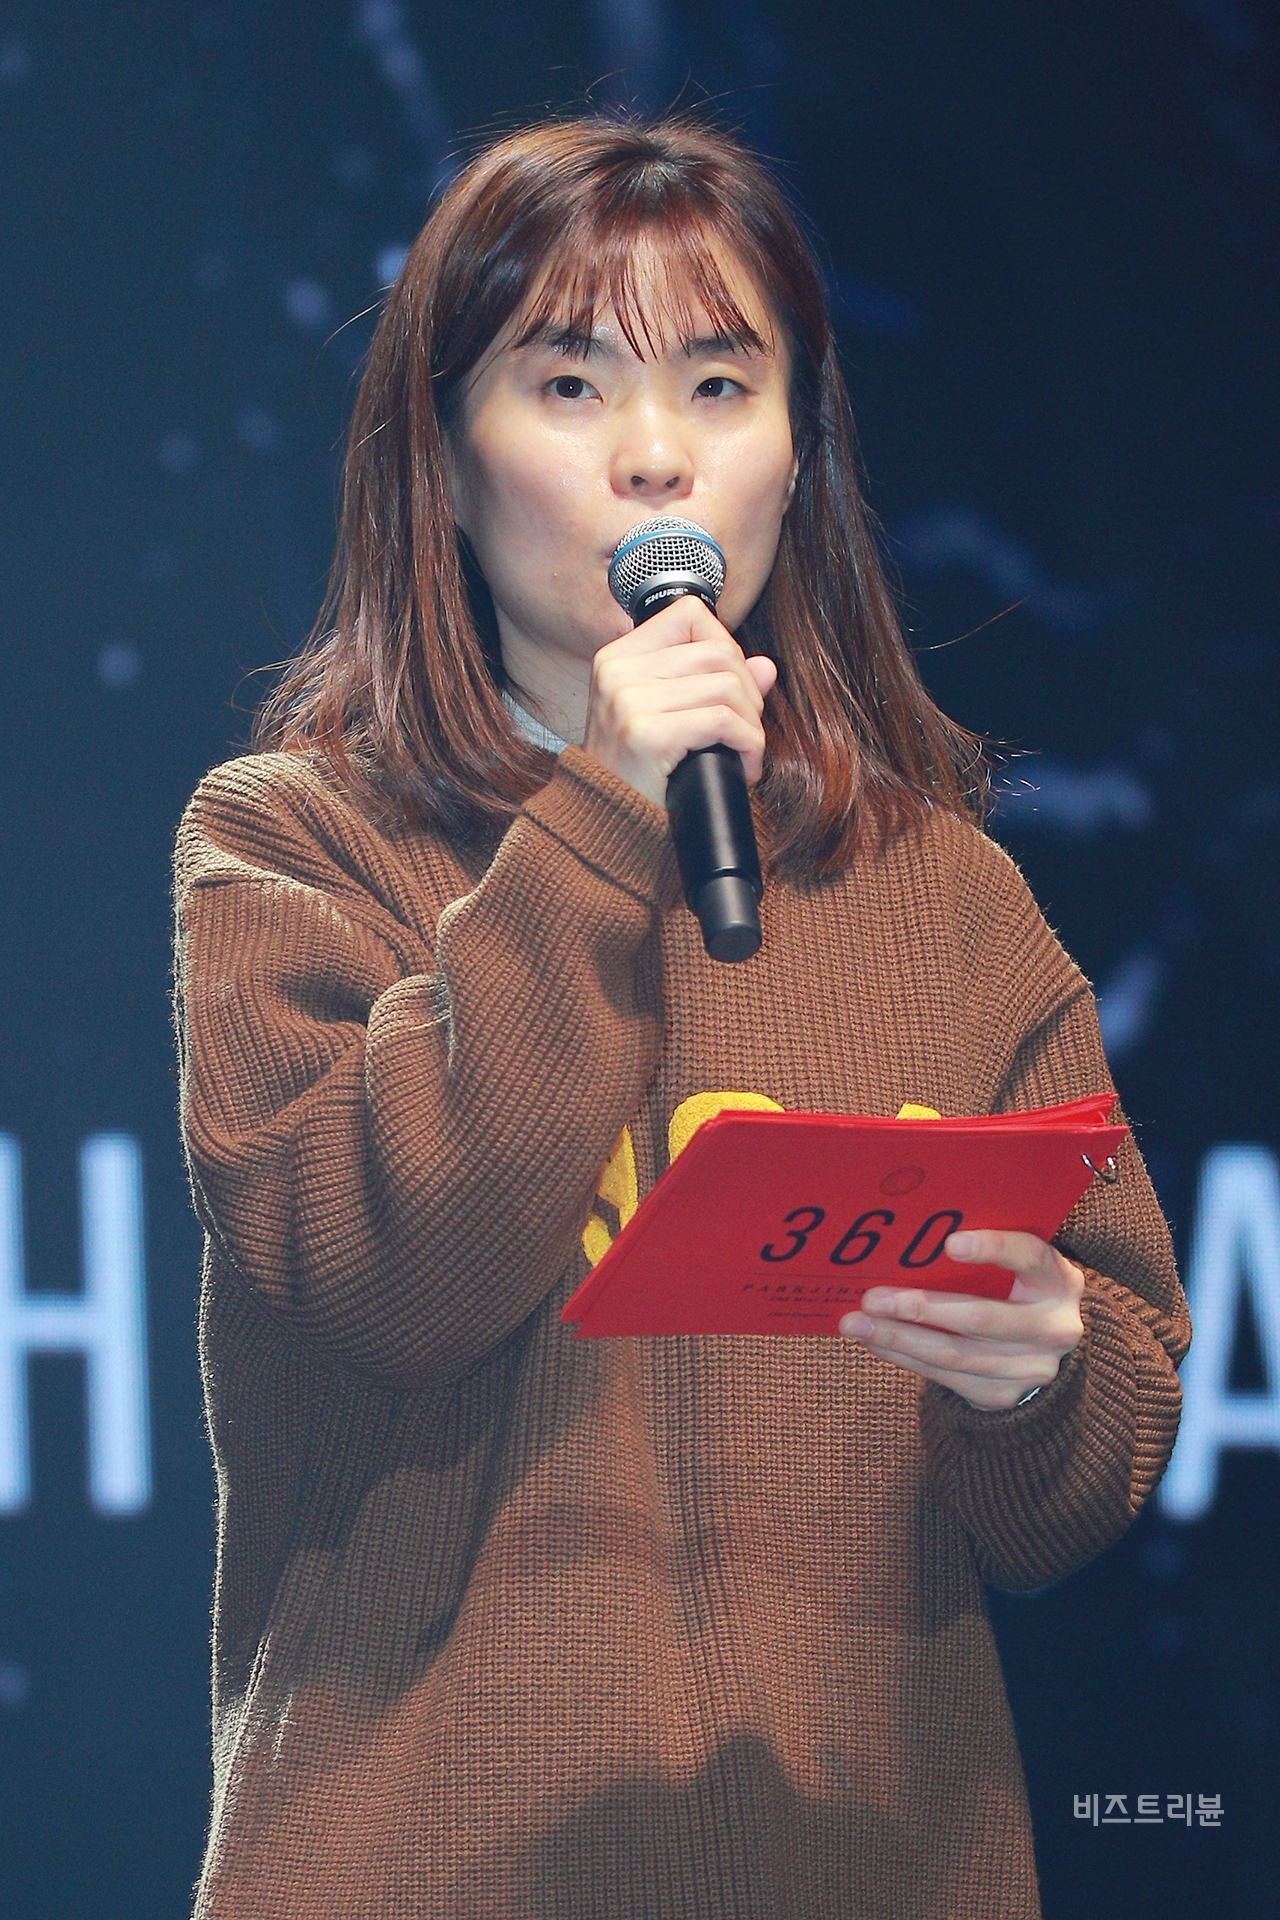 ▲'박지선', 두 번째 미니앨범 '360' 발매 기념 미디어 쇼케이스 현장 ⓒ박윤주 기자